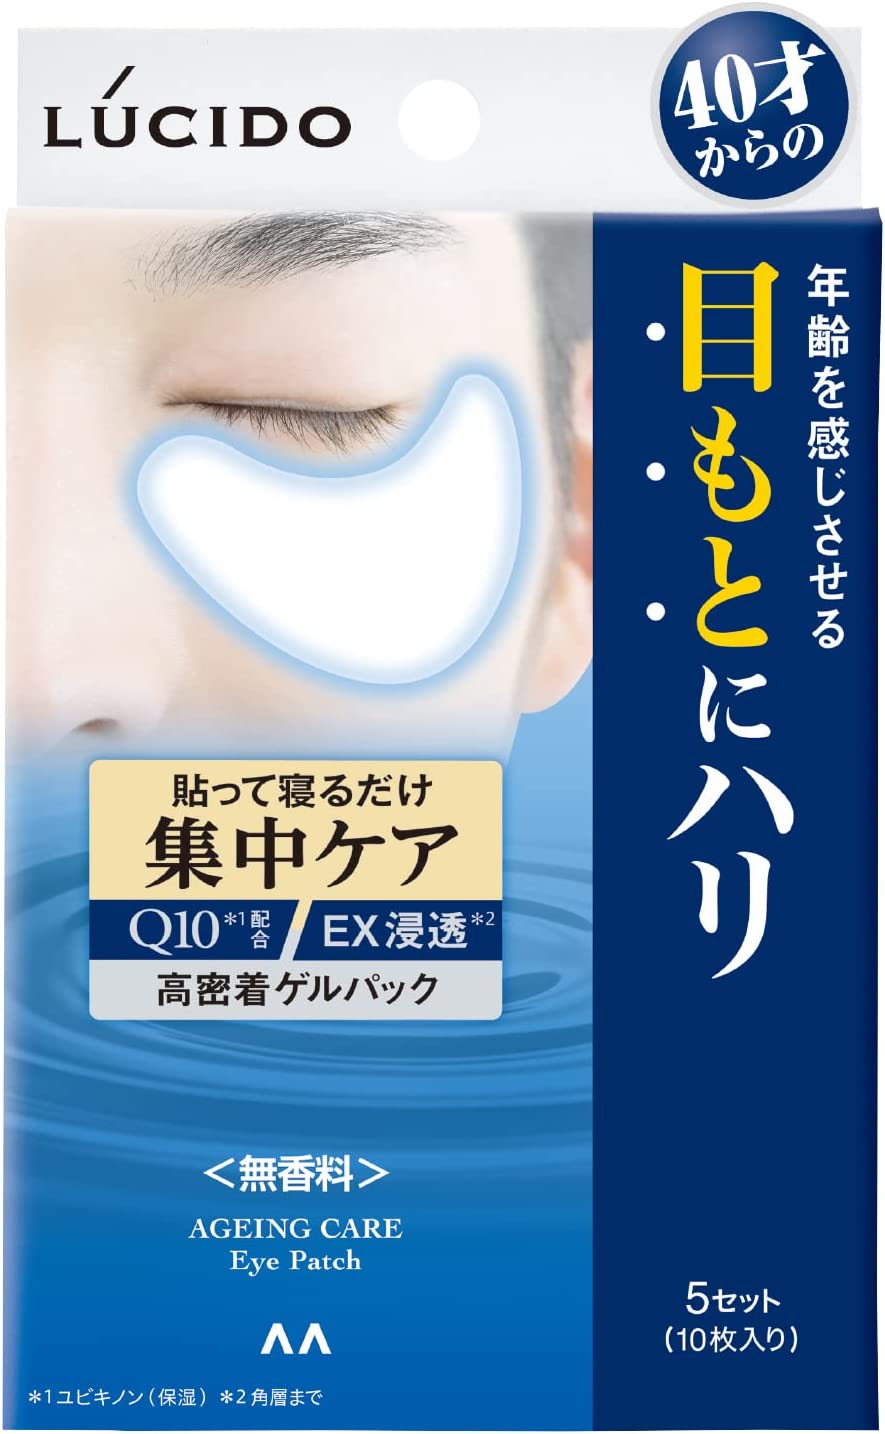 Lucido Intensive Eye Care Pack 10pcs - NihonMura